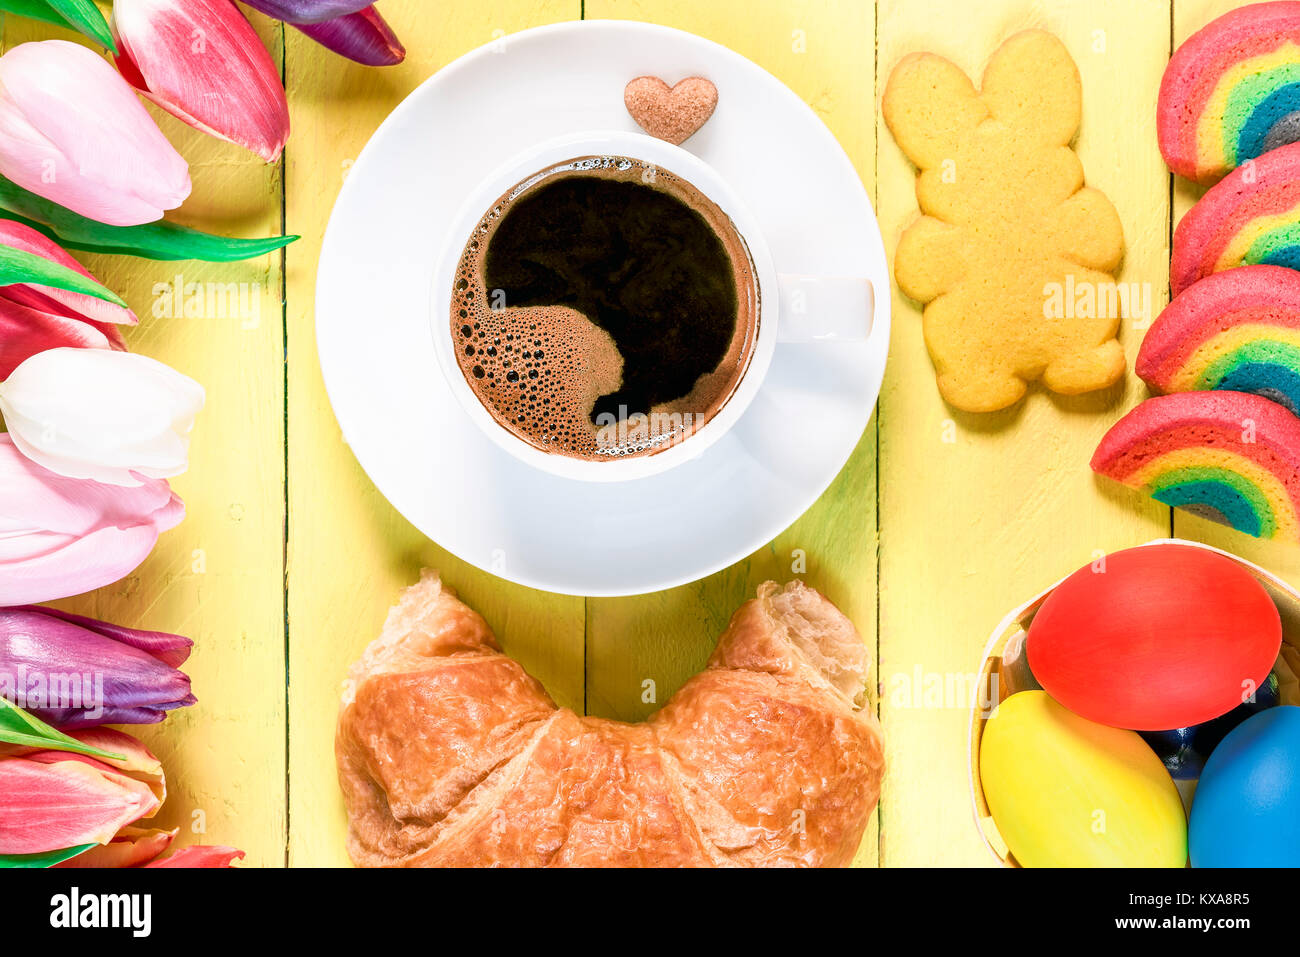 Il mattino di Pasqua con una tazza di caffè, rainbow cookies, dipinto di uova, bunny cookie sagomato, croissant e tulipani multicolore, su un giallo tavolo in legno. Foto Stock